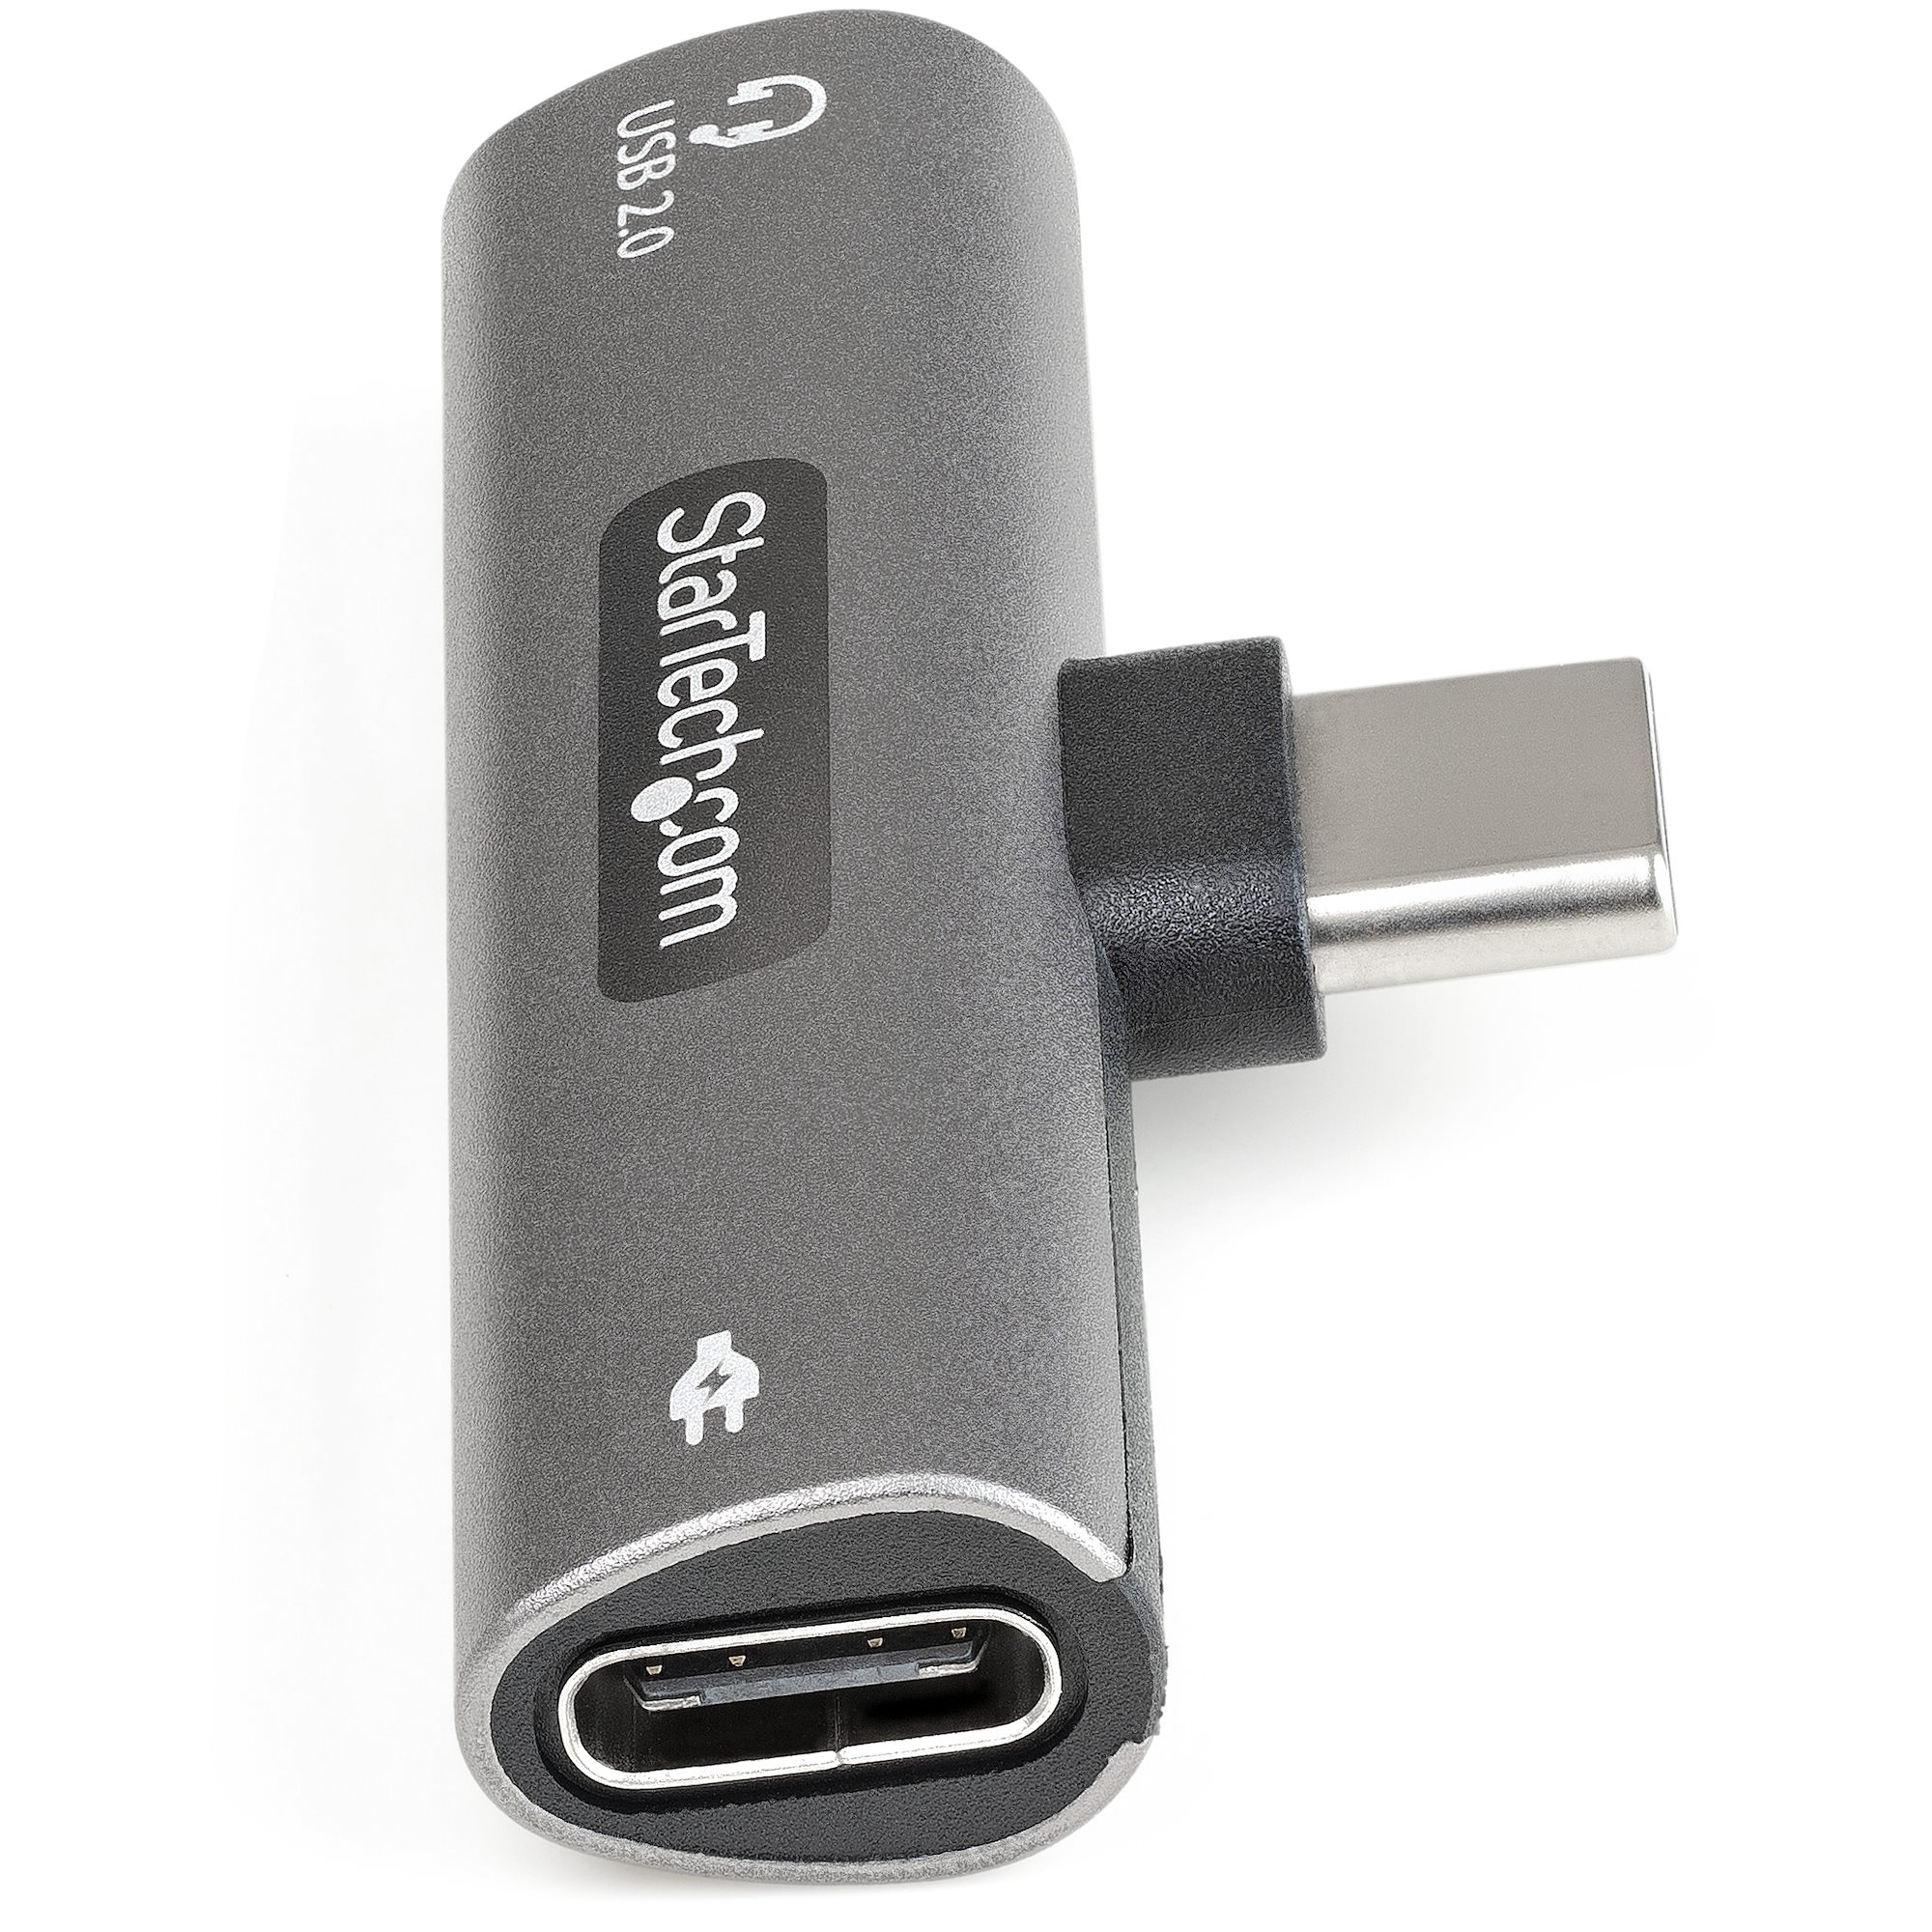 C & A Type C à 3.5 mm Jack Écouteur Chargeur Convertisseur USB adaptateur 2 en 1 